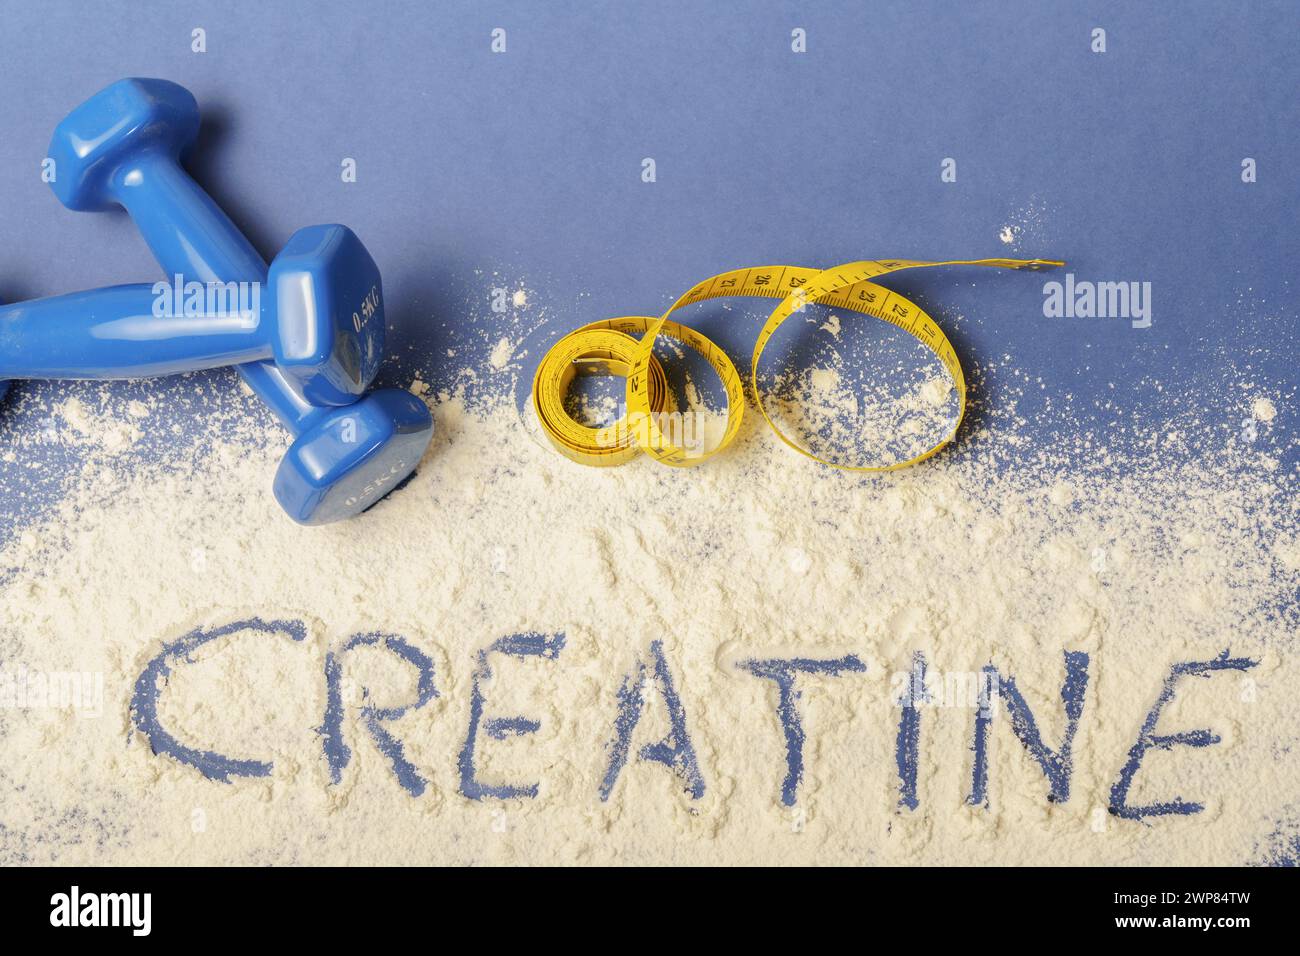 Wort Kreatin auf Kreatinpulver auf blauem Hintergrund, mit Kurzhanteln und Maßband Stockfoto